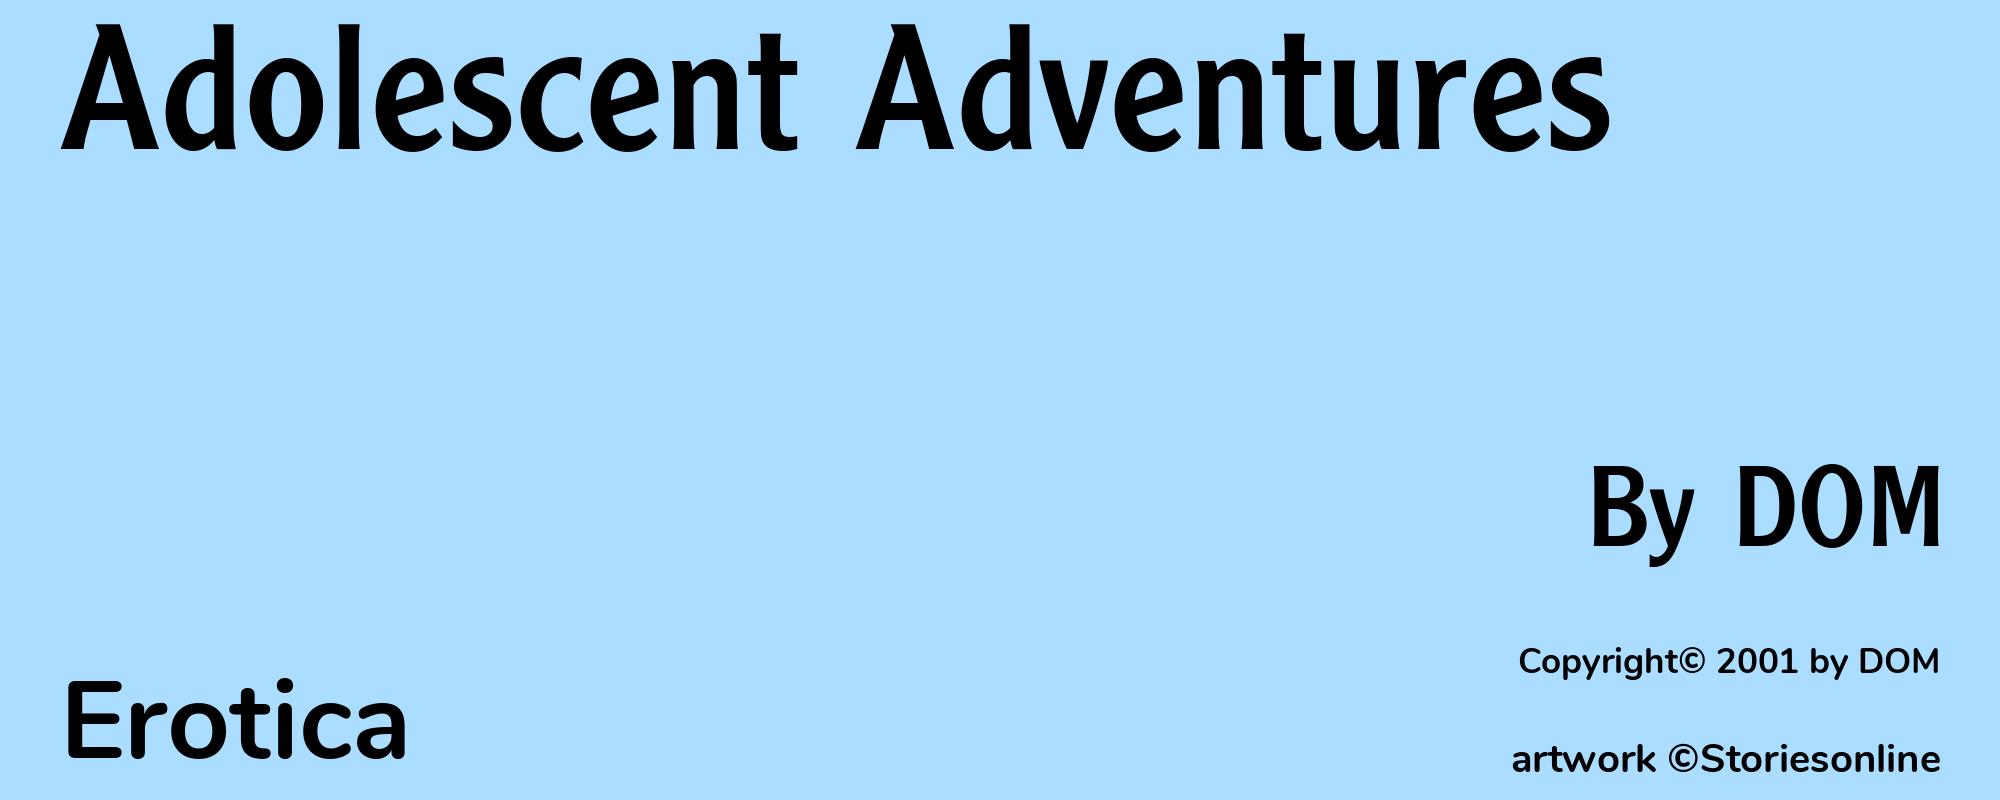 Adolescent Adventures - Cover